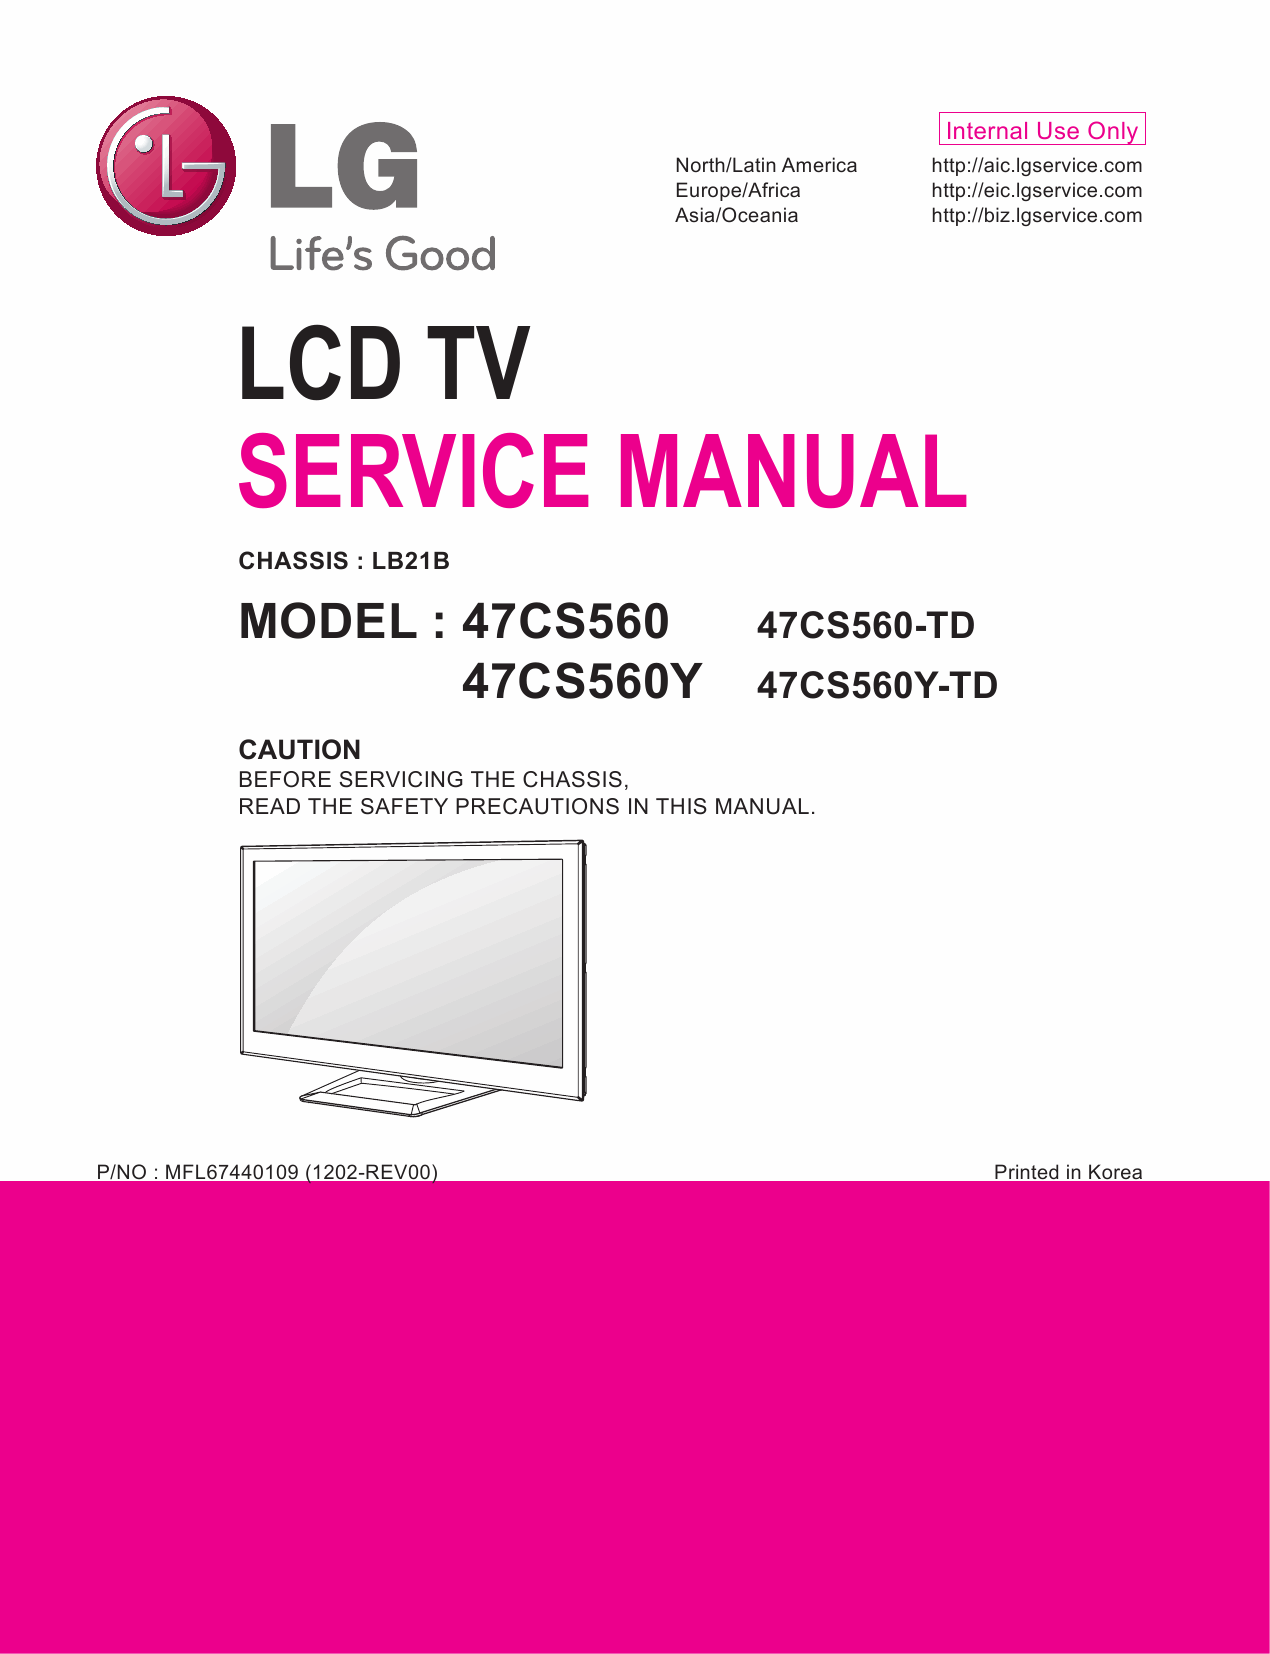 LG_LCD_TV_47CS560_560Y_Service_Manual_2012_Qmanual.com-1